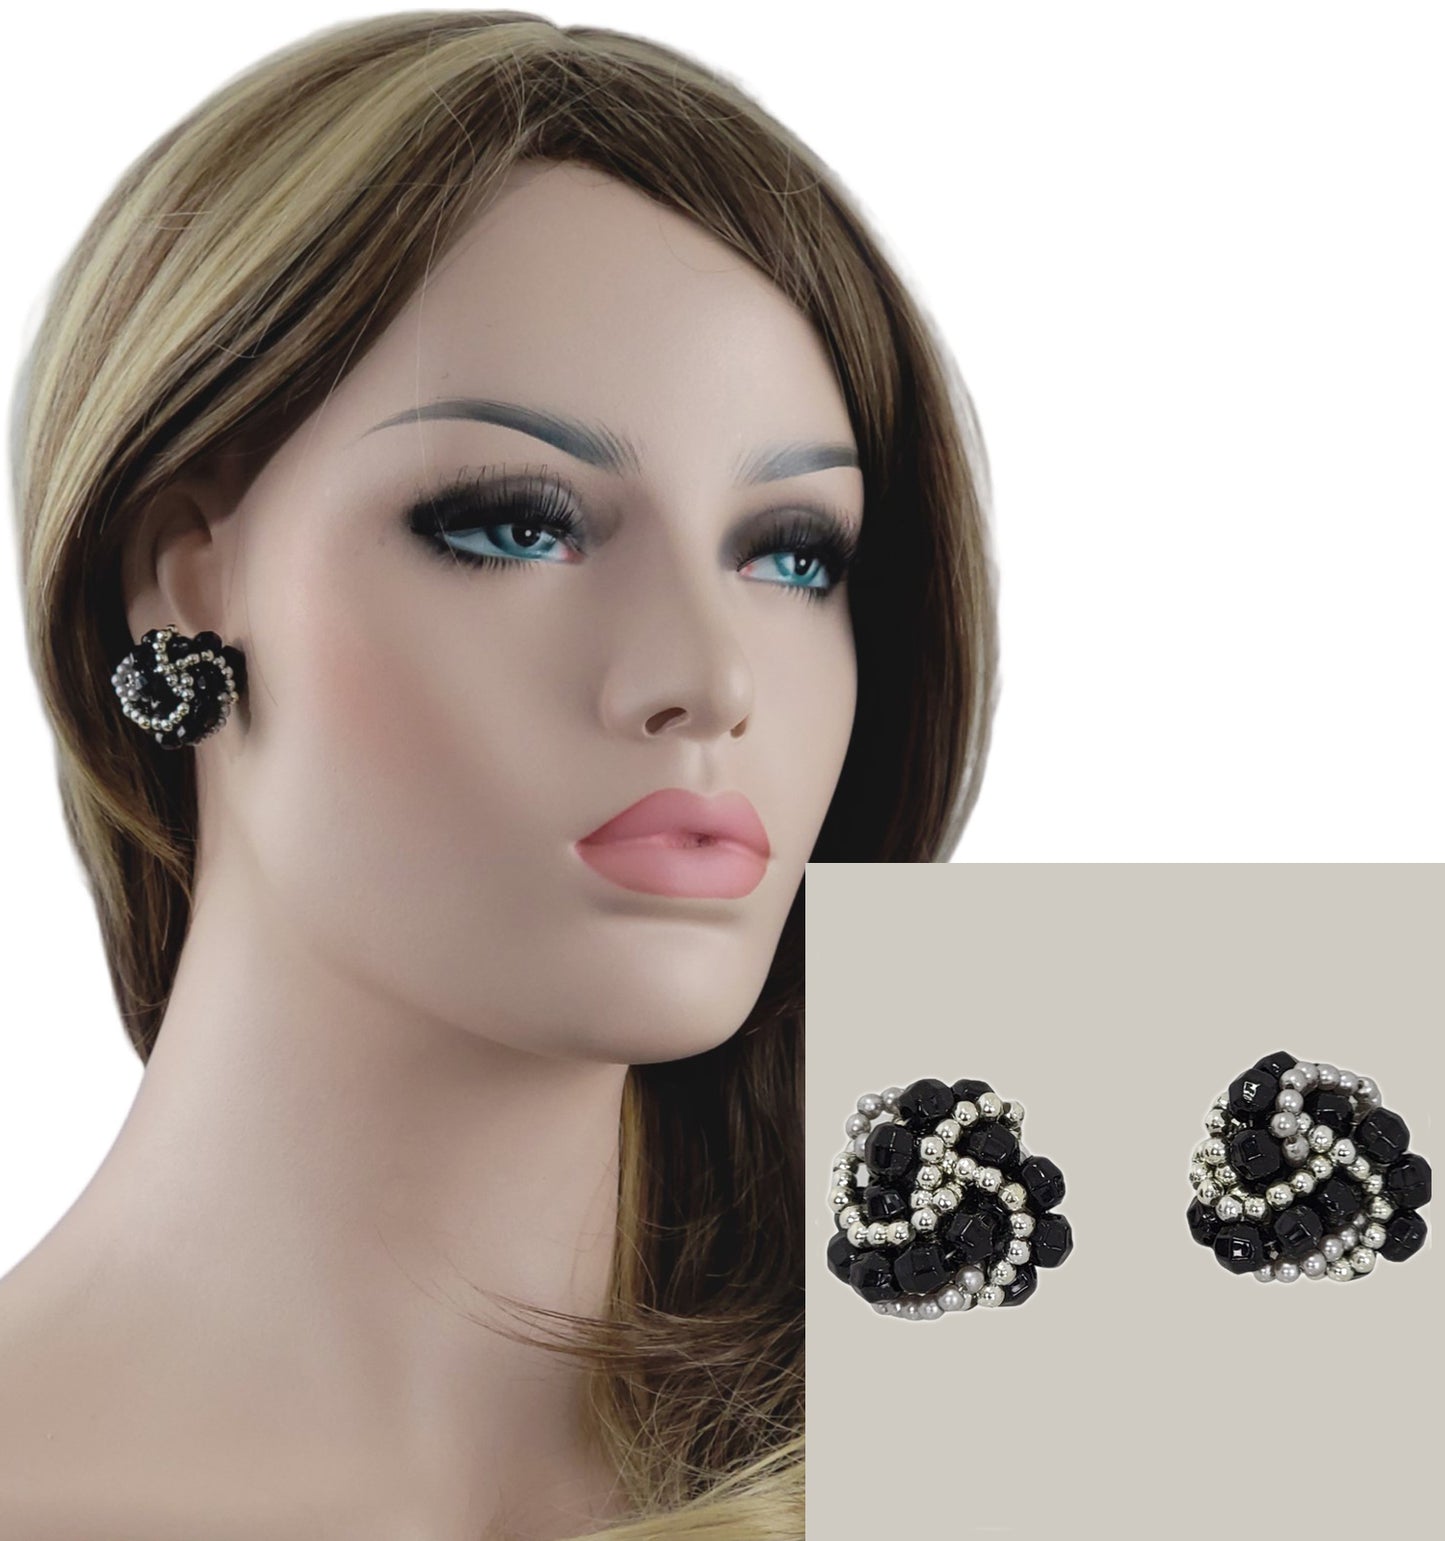 Large Beaded Button Pierced Earrings Black Silver Tone 1 1/8"